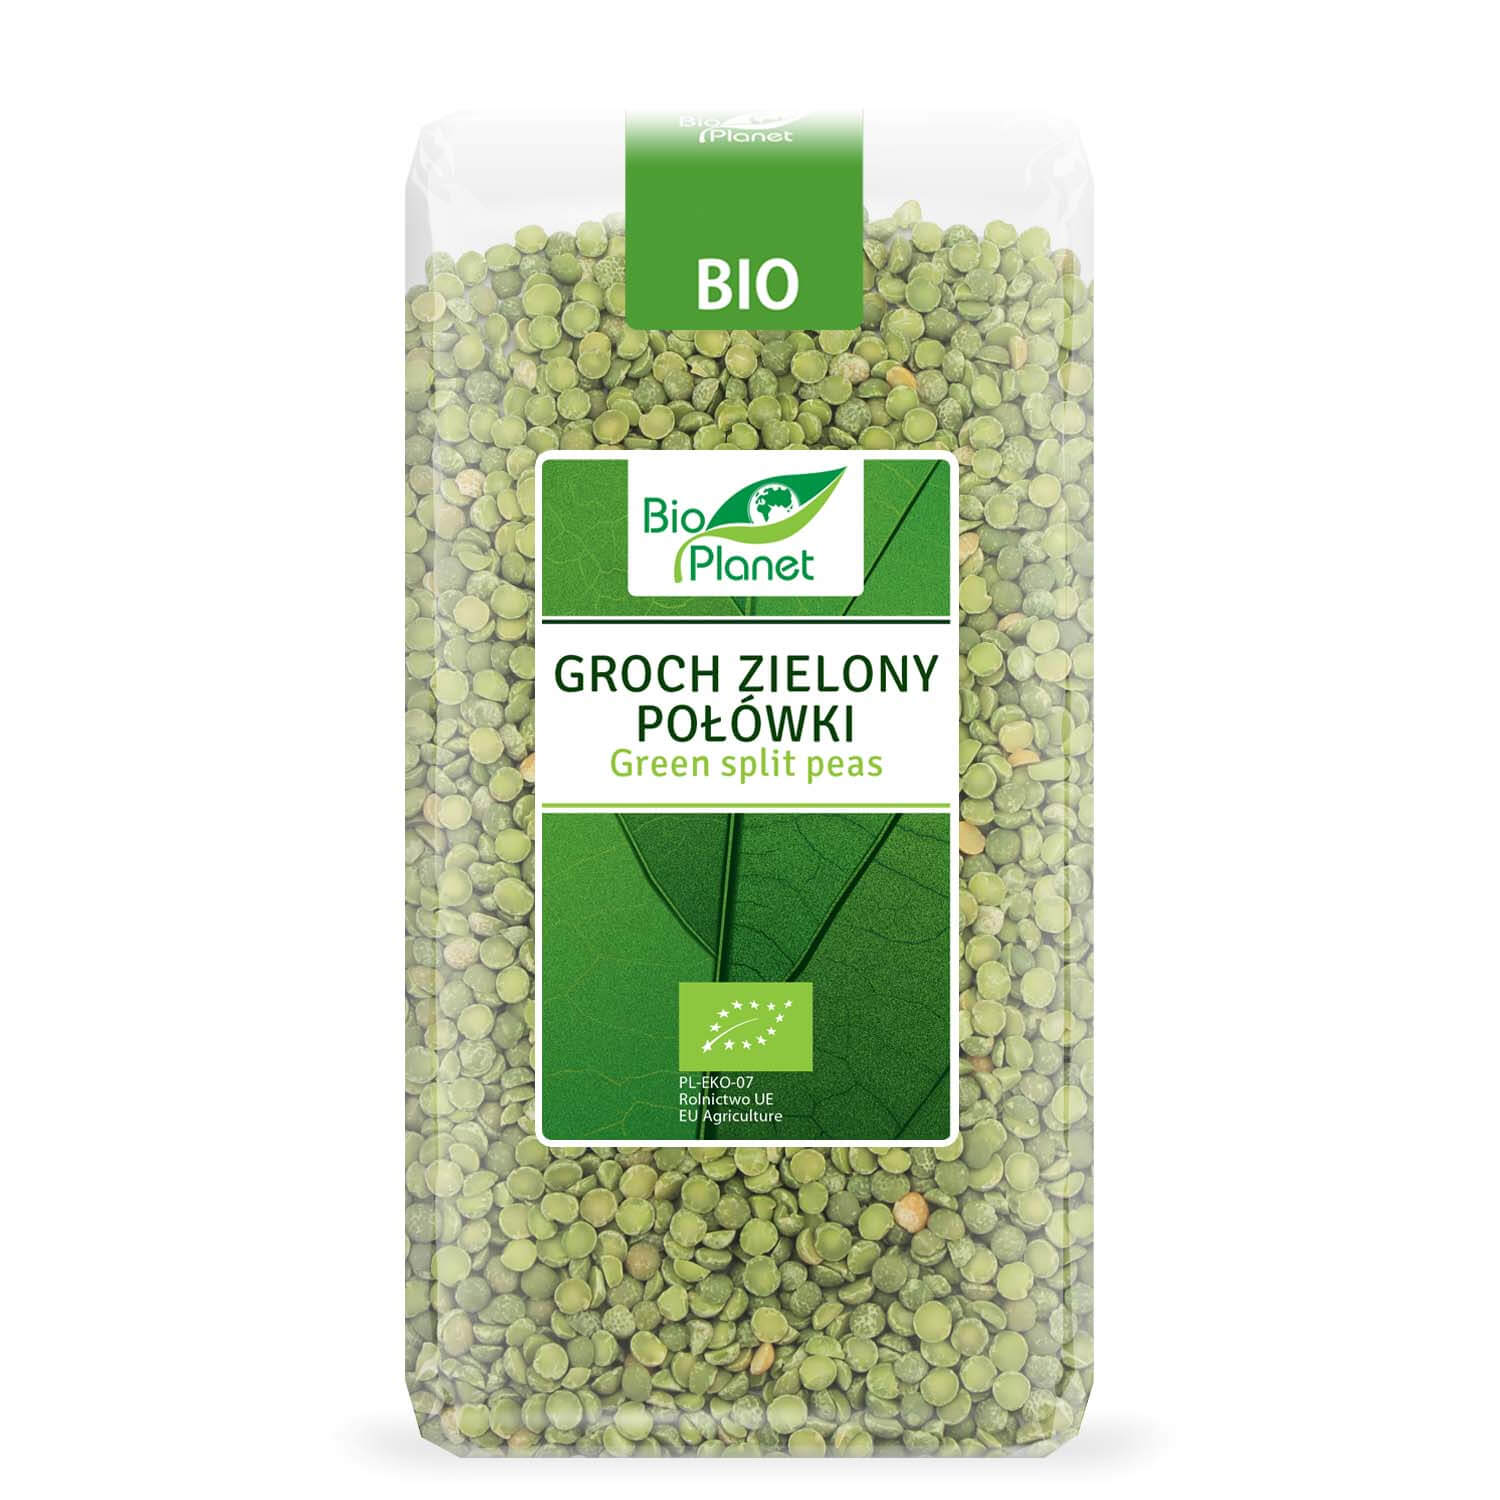 Groch zielony połówki BIO 500 g - Bio Planet